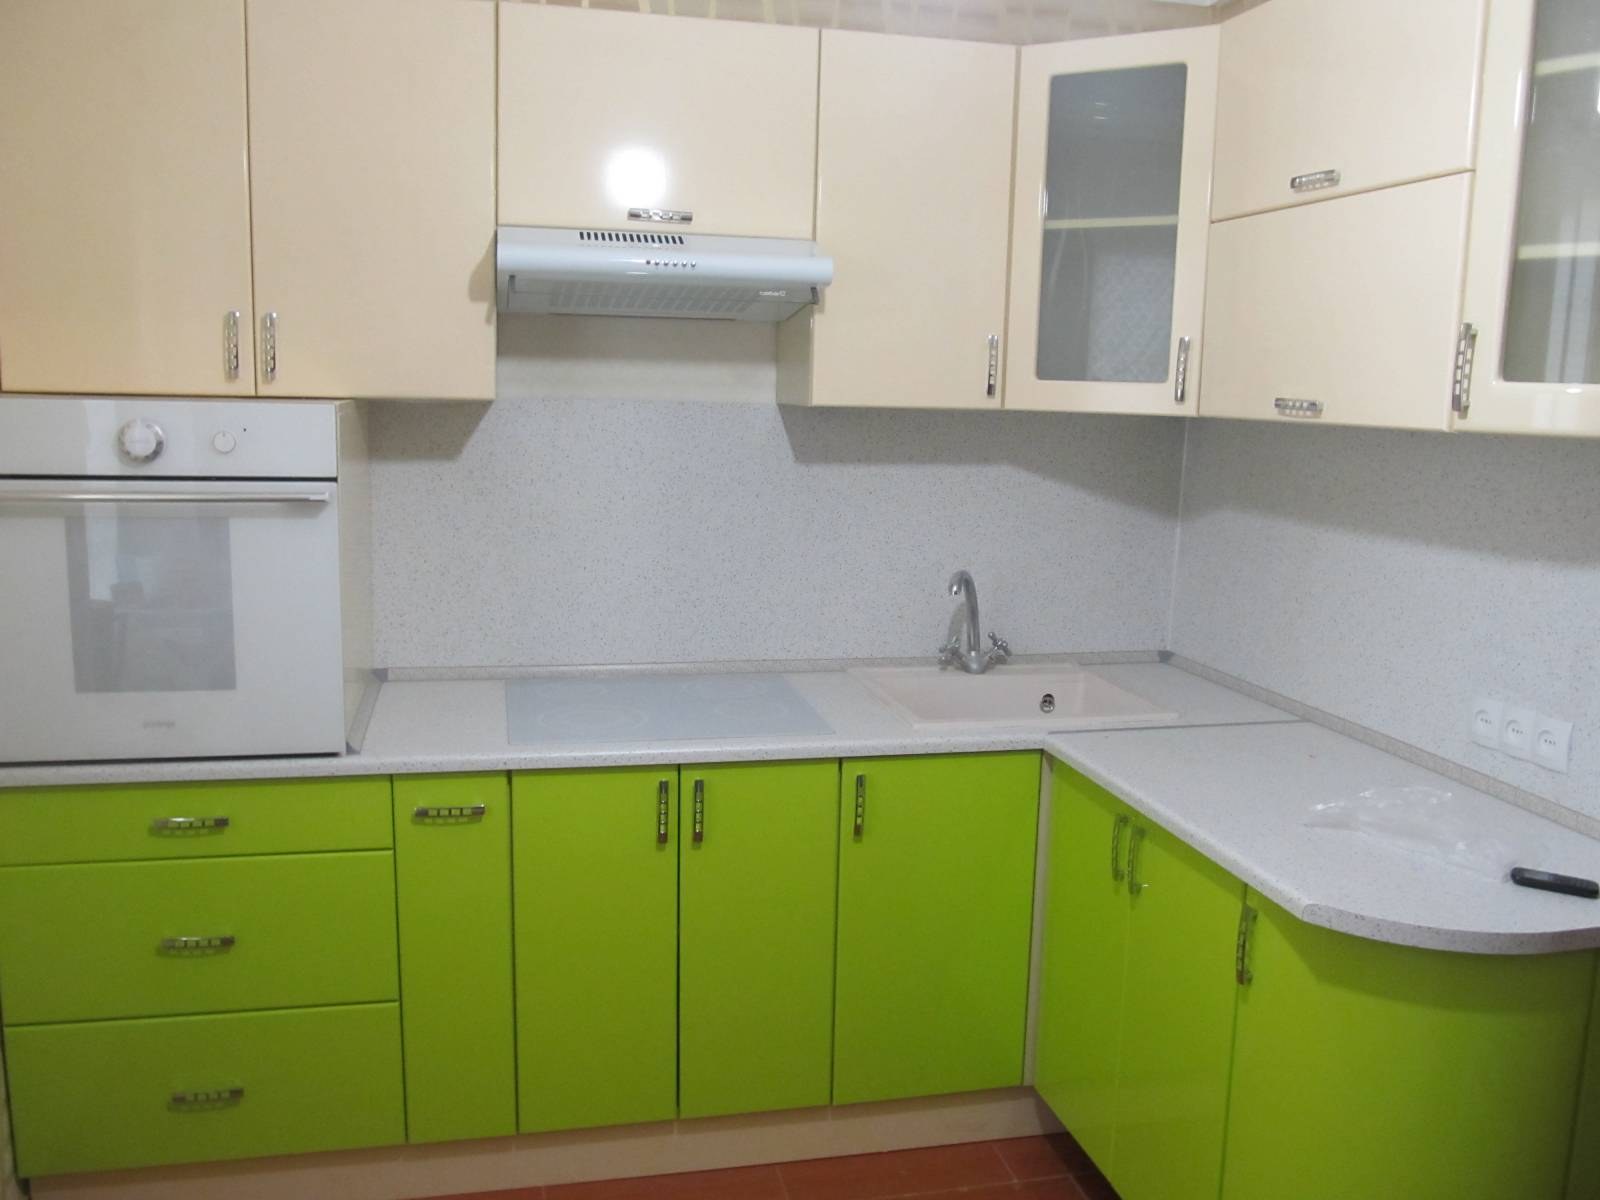 Кухня зеленый низ бежевый верх